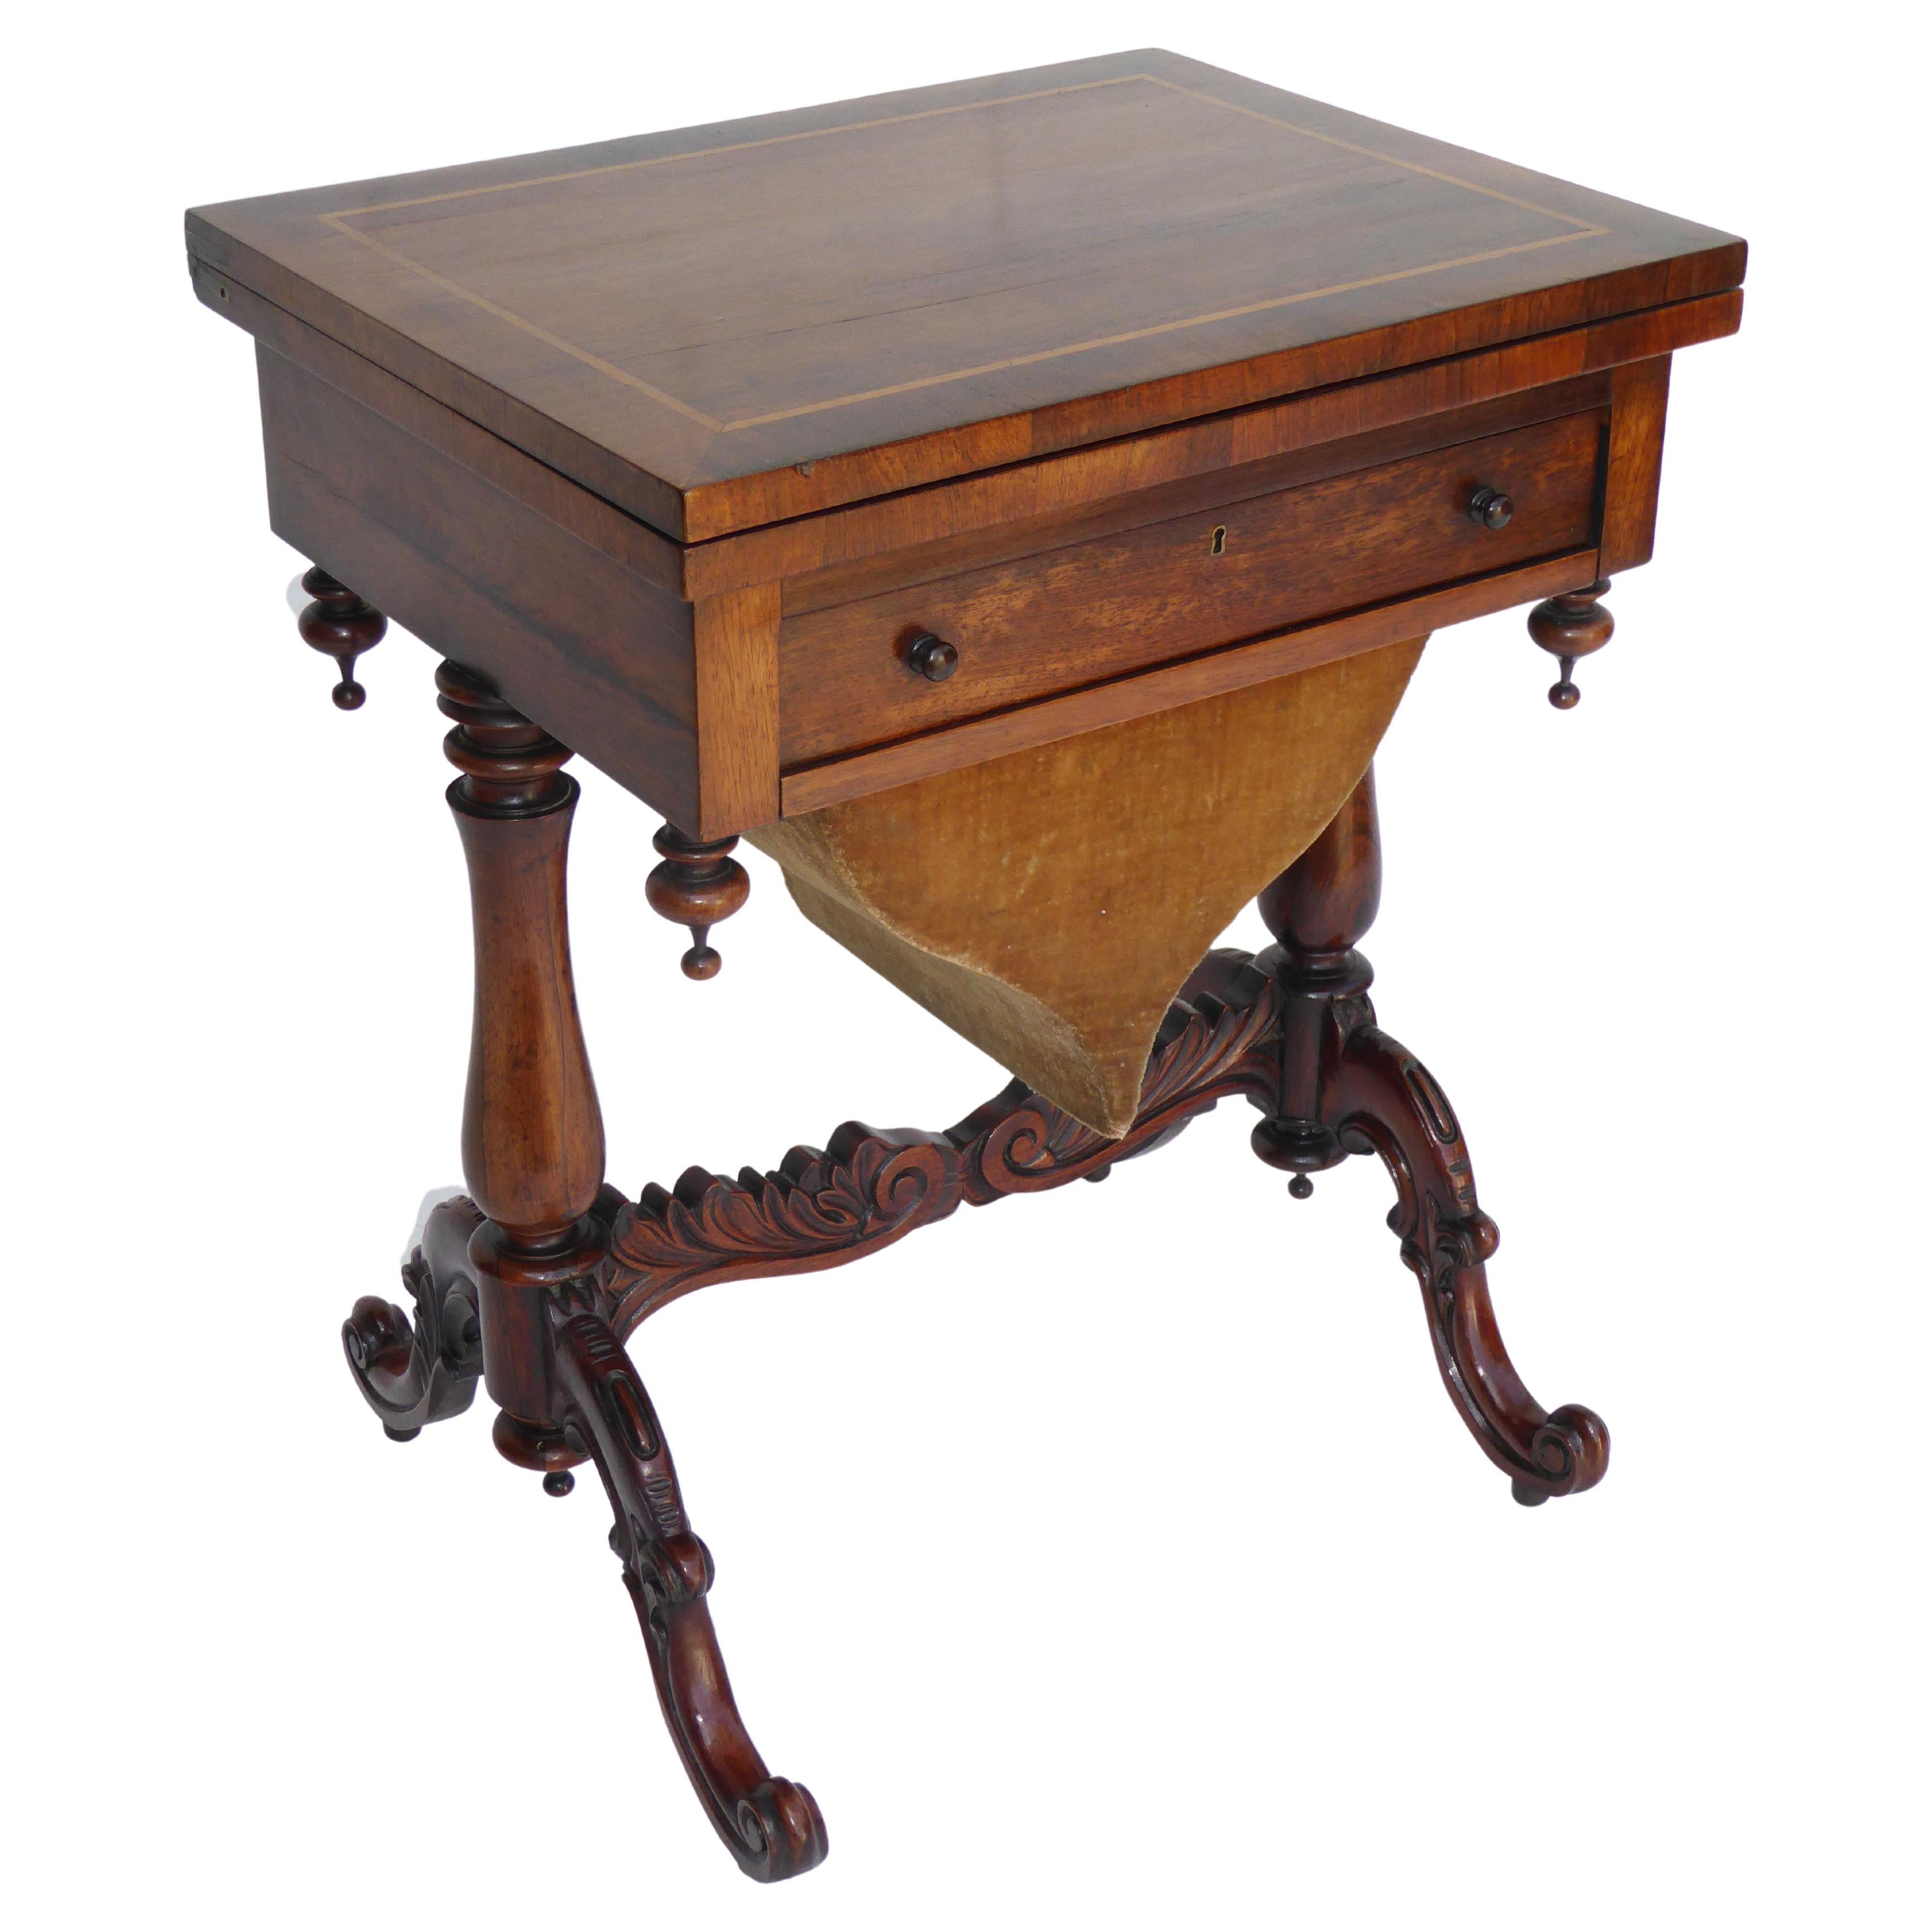 Englischer viktorianischer Spieltisch aus Rosenholz aus dem 19. Jahrhundert